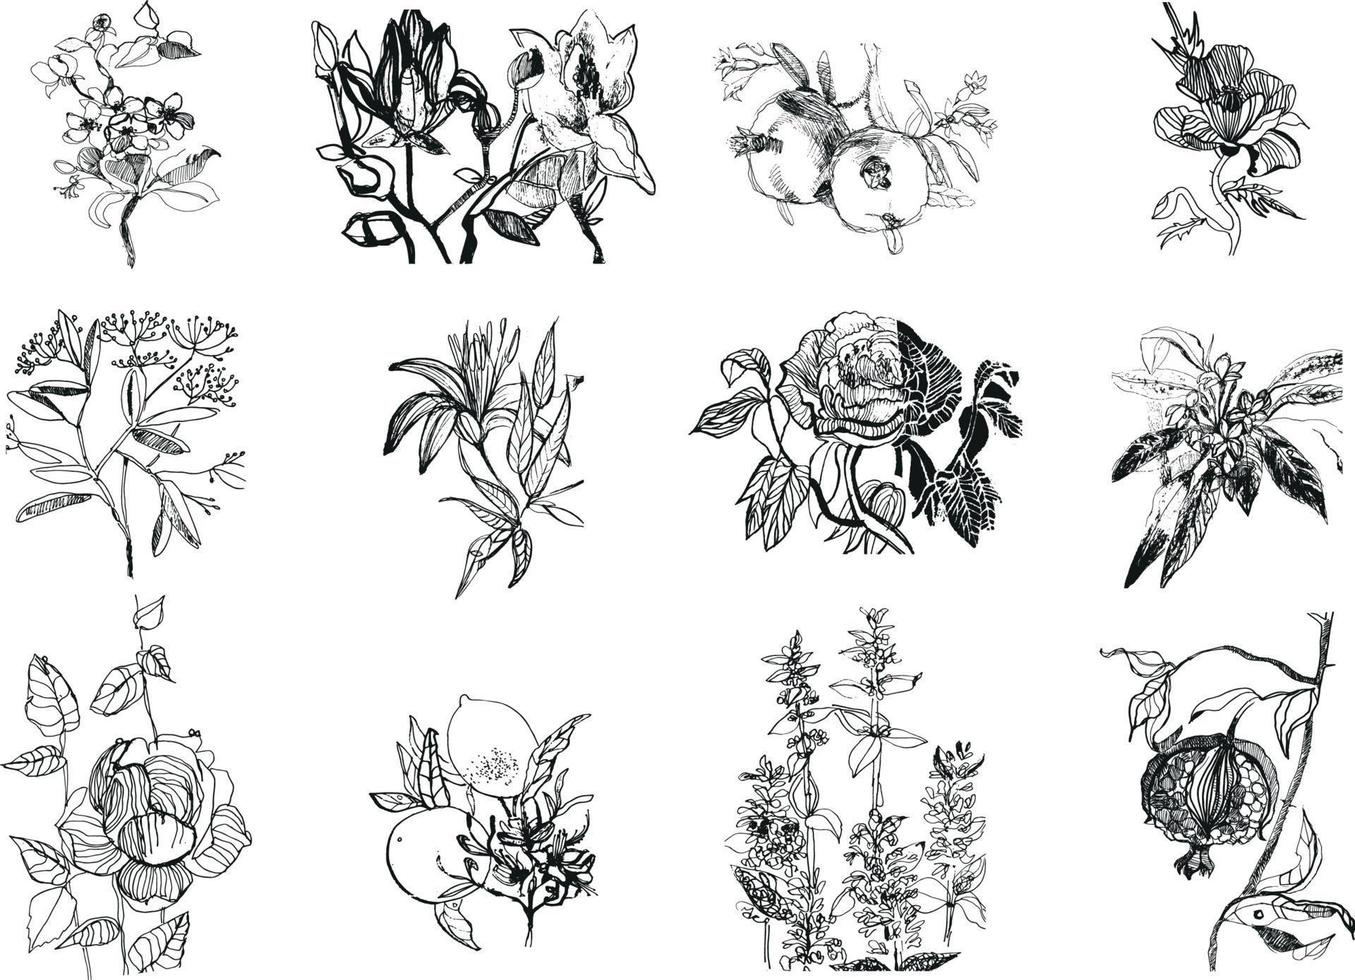 ilustrações de flores e plantas vetor